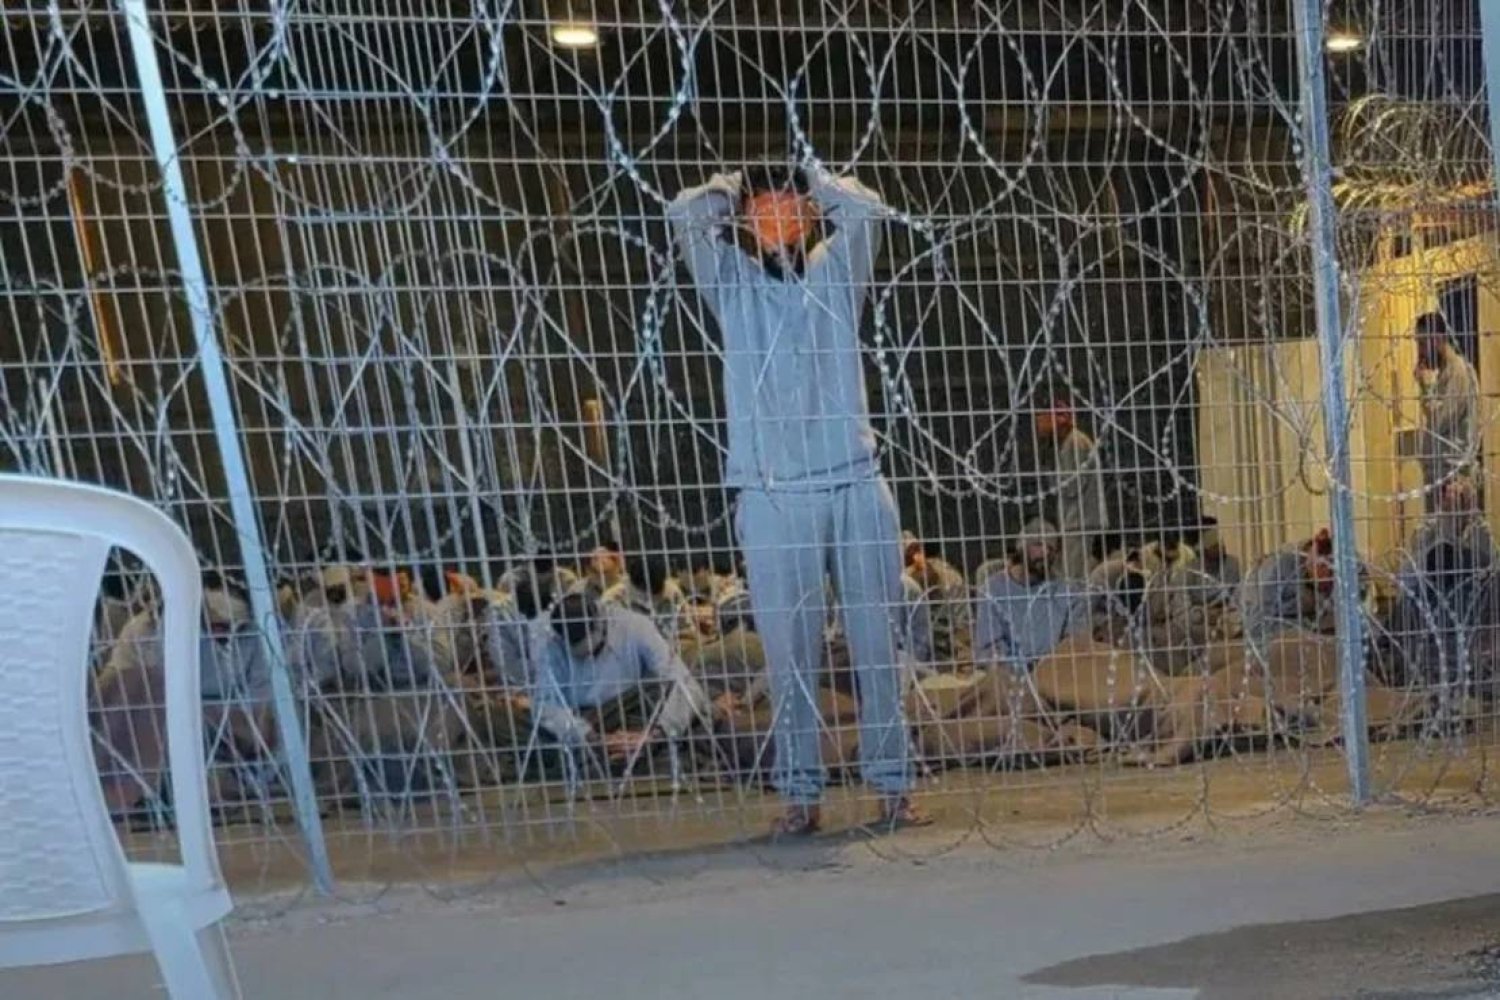 بتر أطراف وجروح تُترك لتتعفن... «الموت أفضل» لفلسطينيين في سجن إسرائيلي «مرعب»